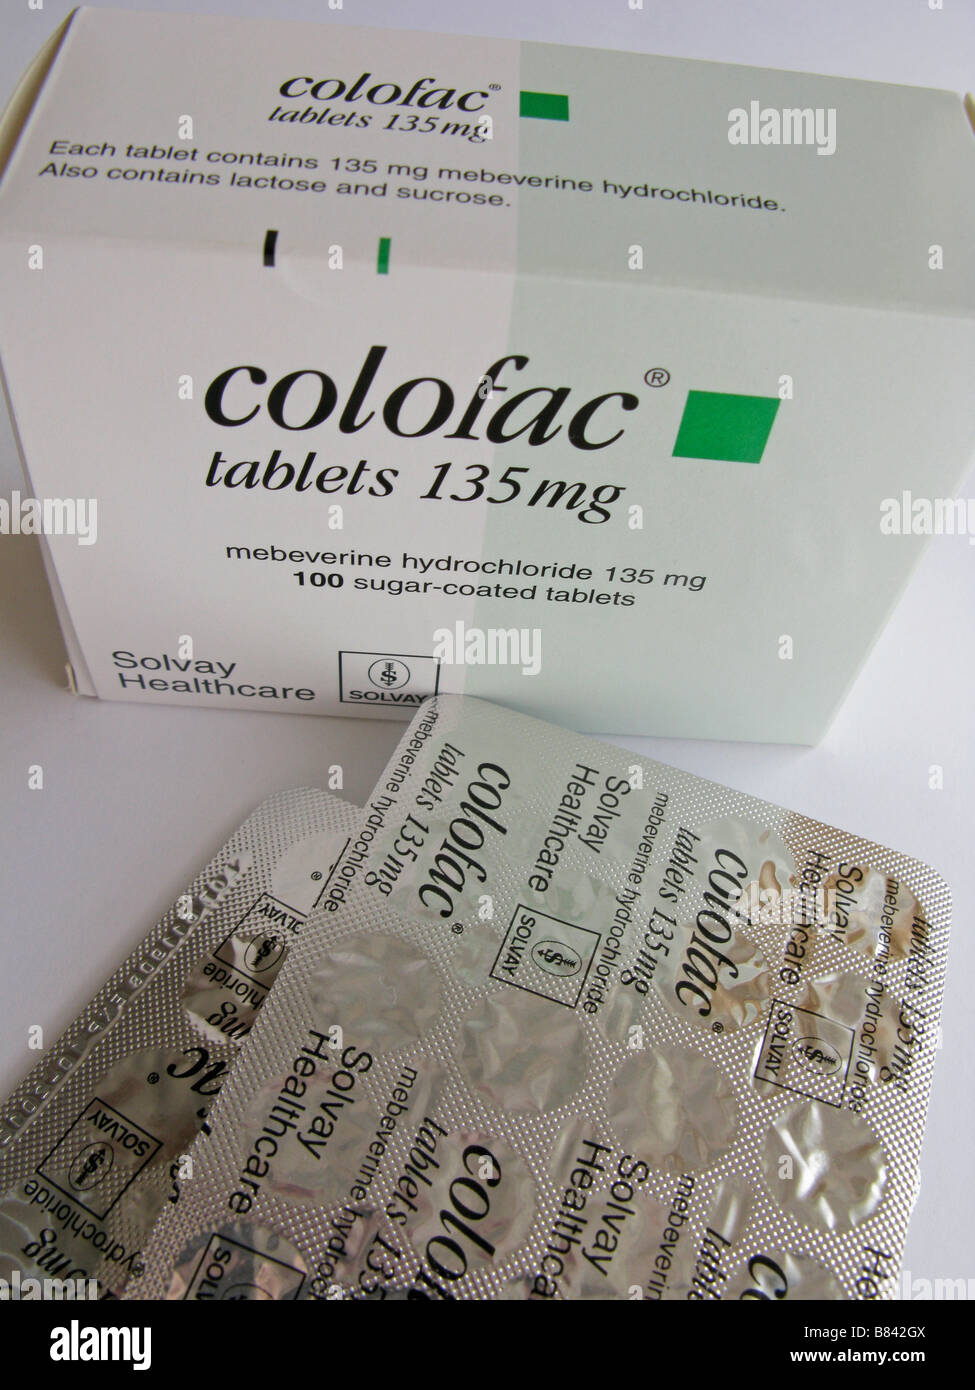 Colofac mebeverine antispastici cloridrato compresse per il trattamento  della sindrome da intestino irritabile altre condizioni intestinali Foto  stock - Alamy